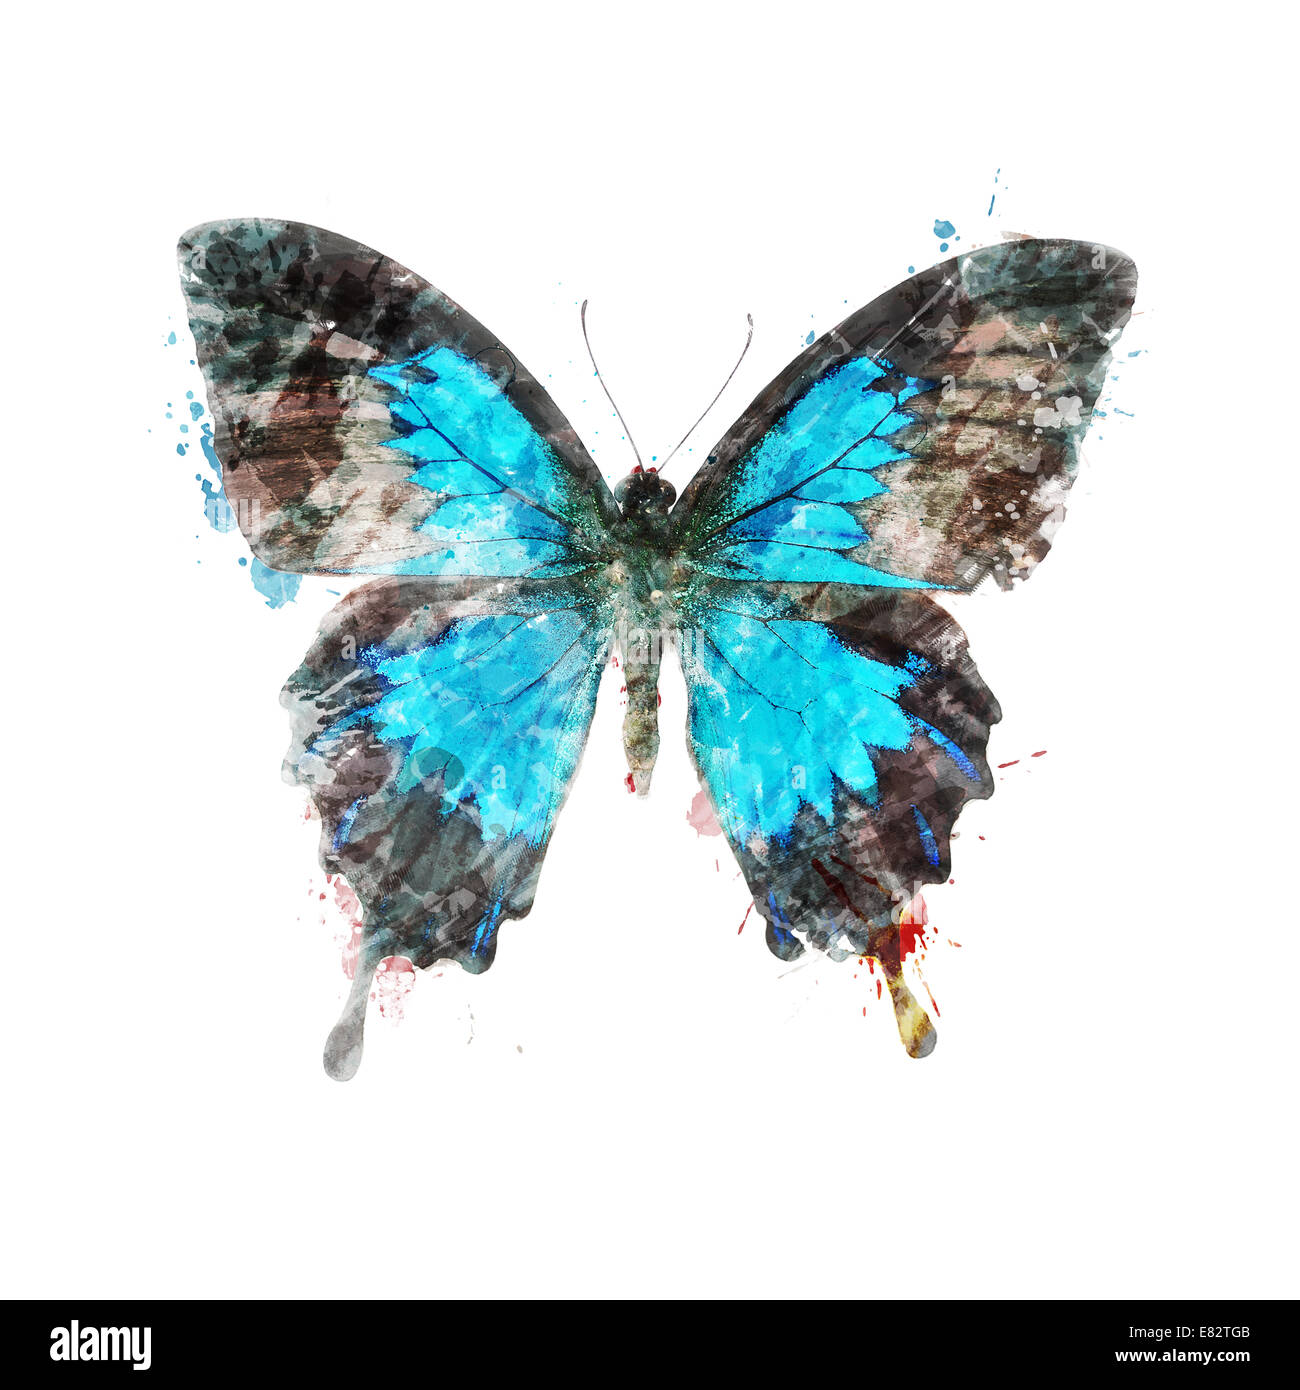 Aquarelle peinture digitale de papillons tropicaux Banque D'Images